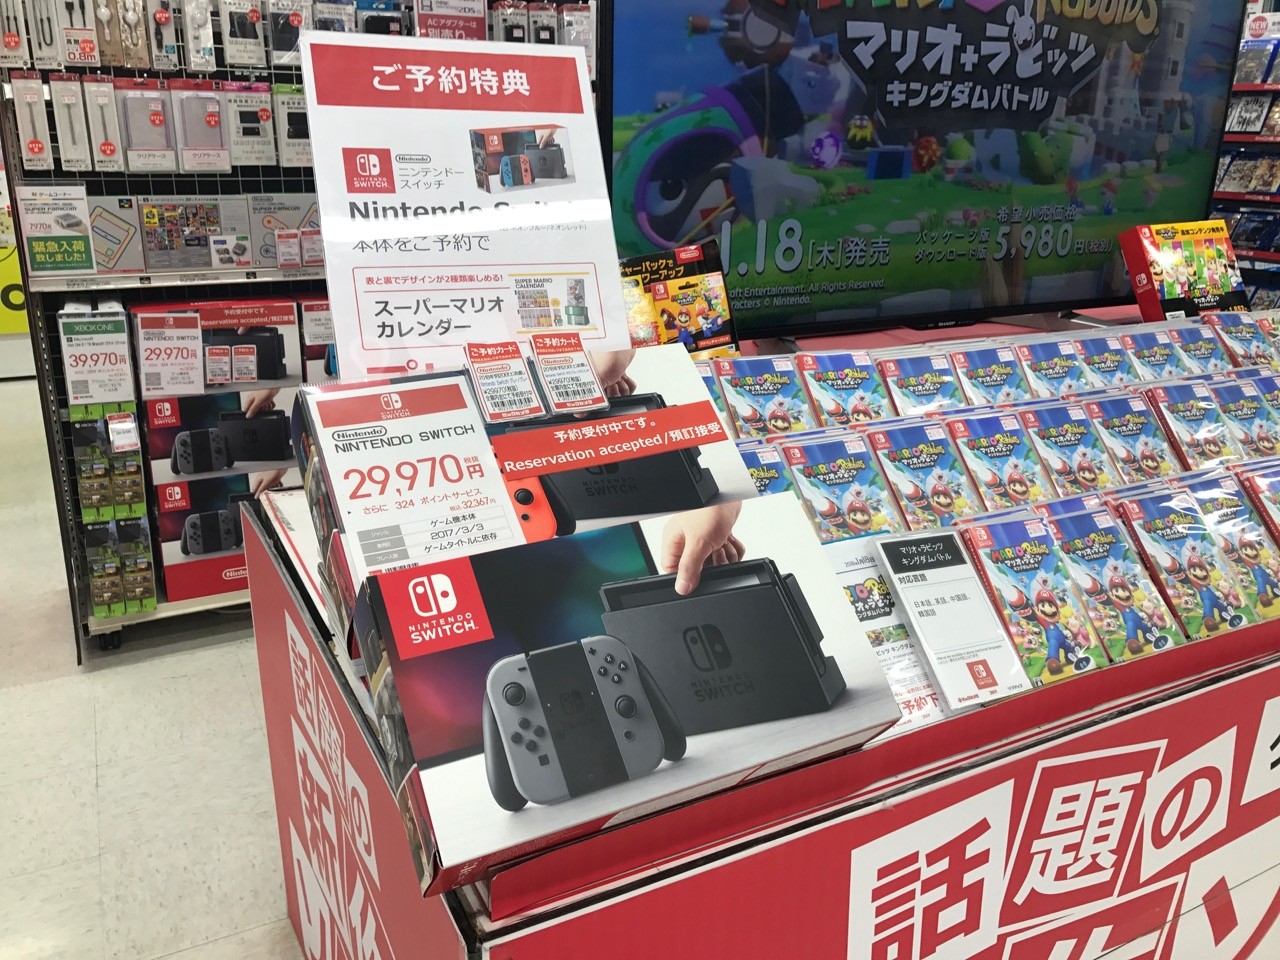 ビックカメラ Nintendo Switchが 今なら絶対に手に入る とアナウンス 1 販売へ マリオカレンダー付き め んずスタジオ